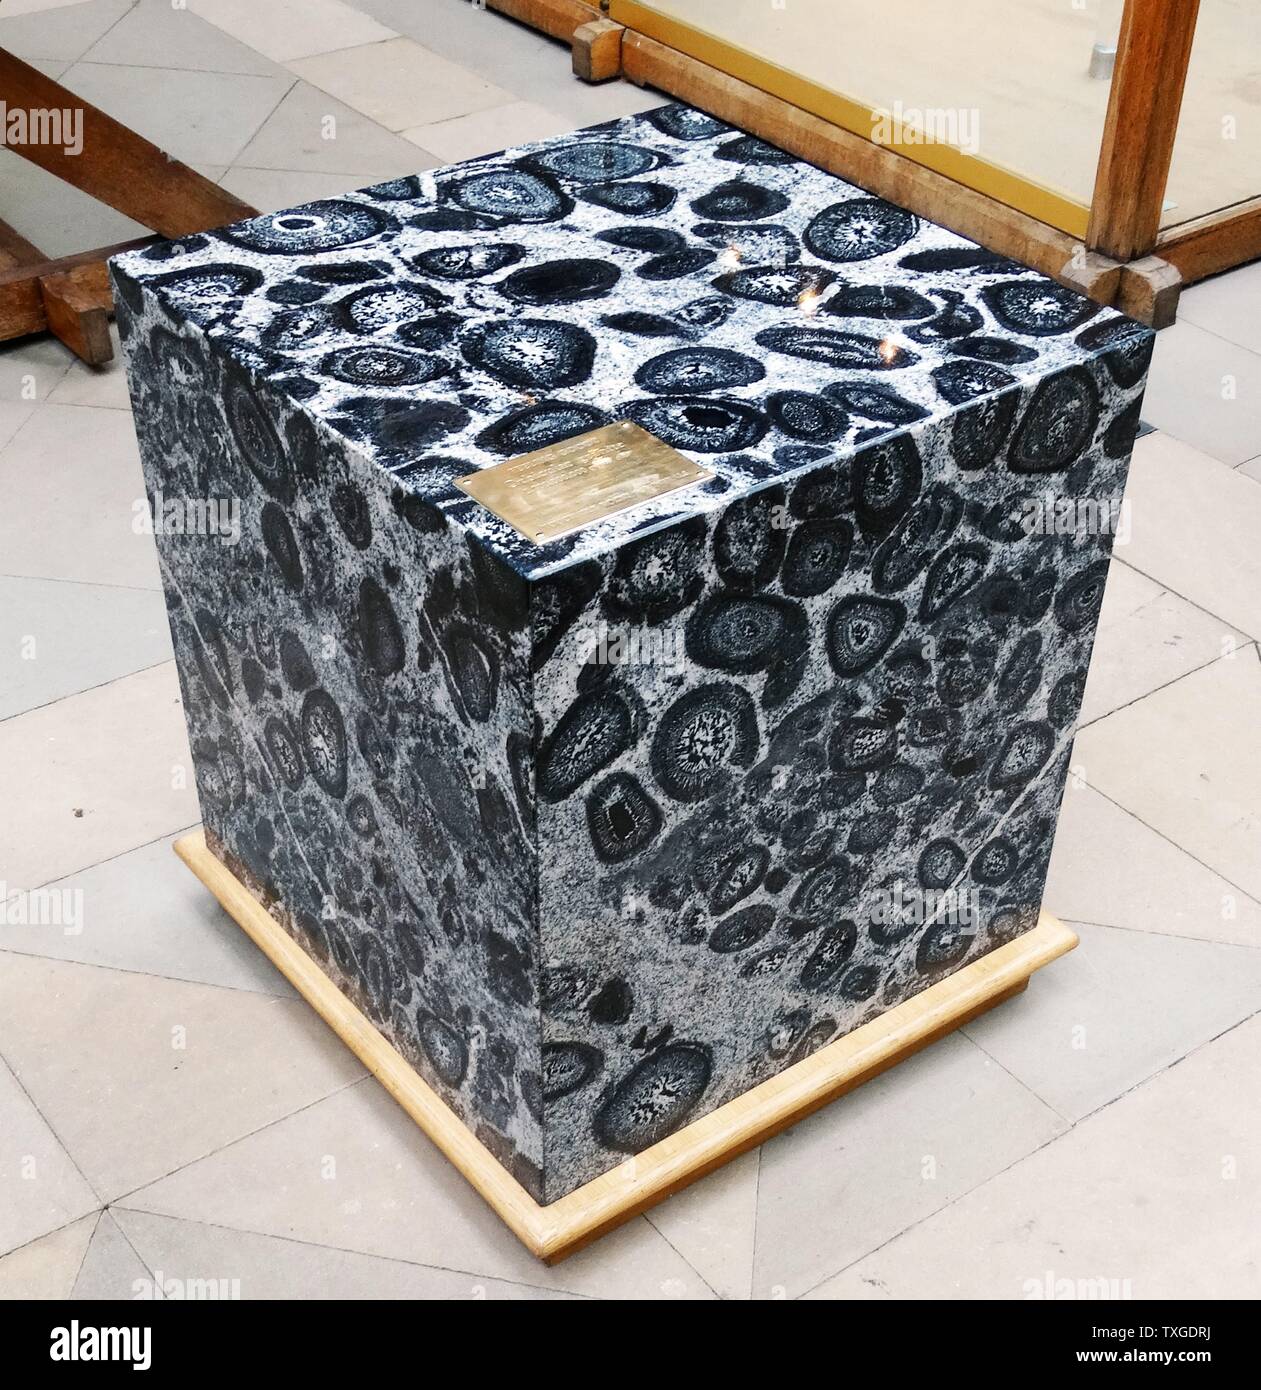 Kugelförmige Granit, ein ungewöhnlich Tiefengestein Art, die in der Regel Granit Zusammensetzung ist. Stockfoto